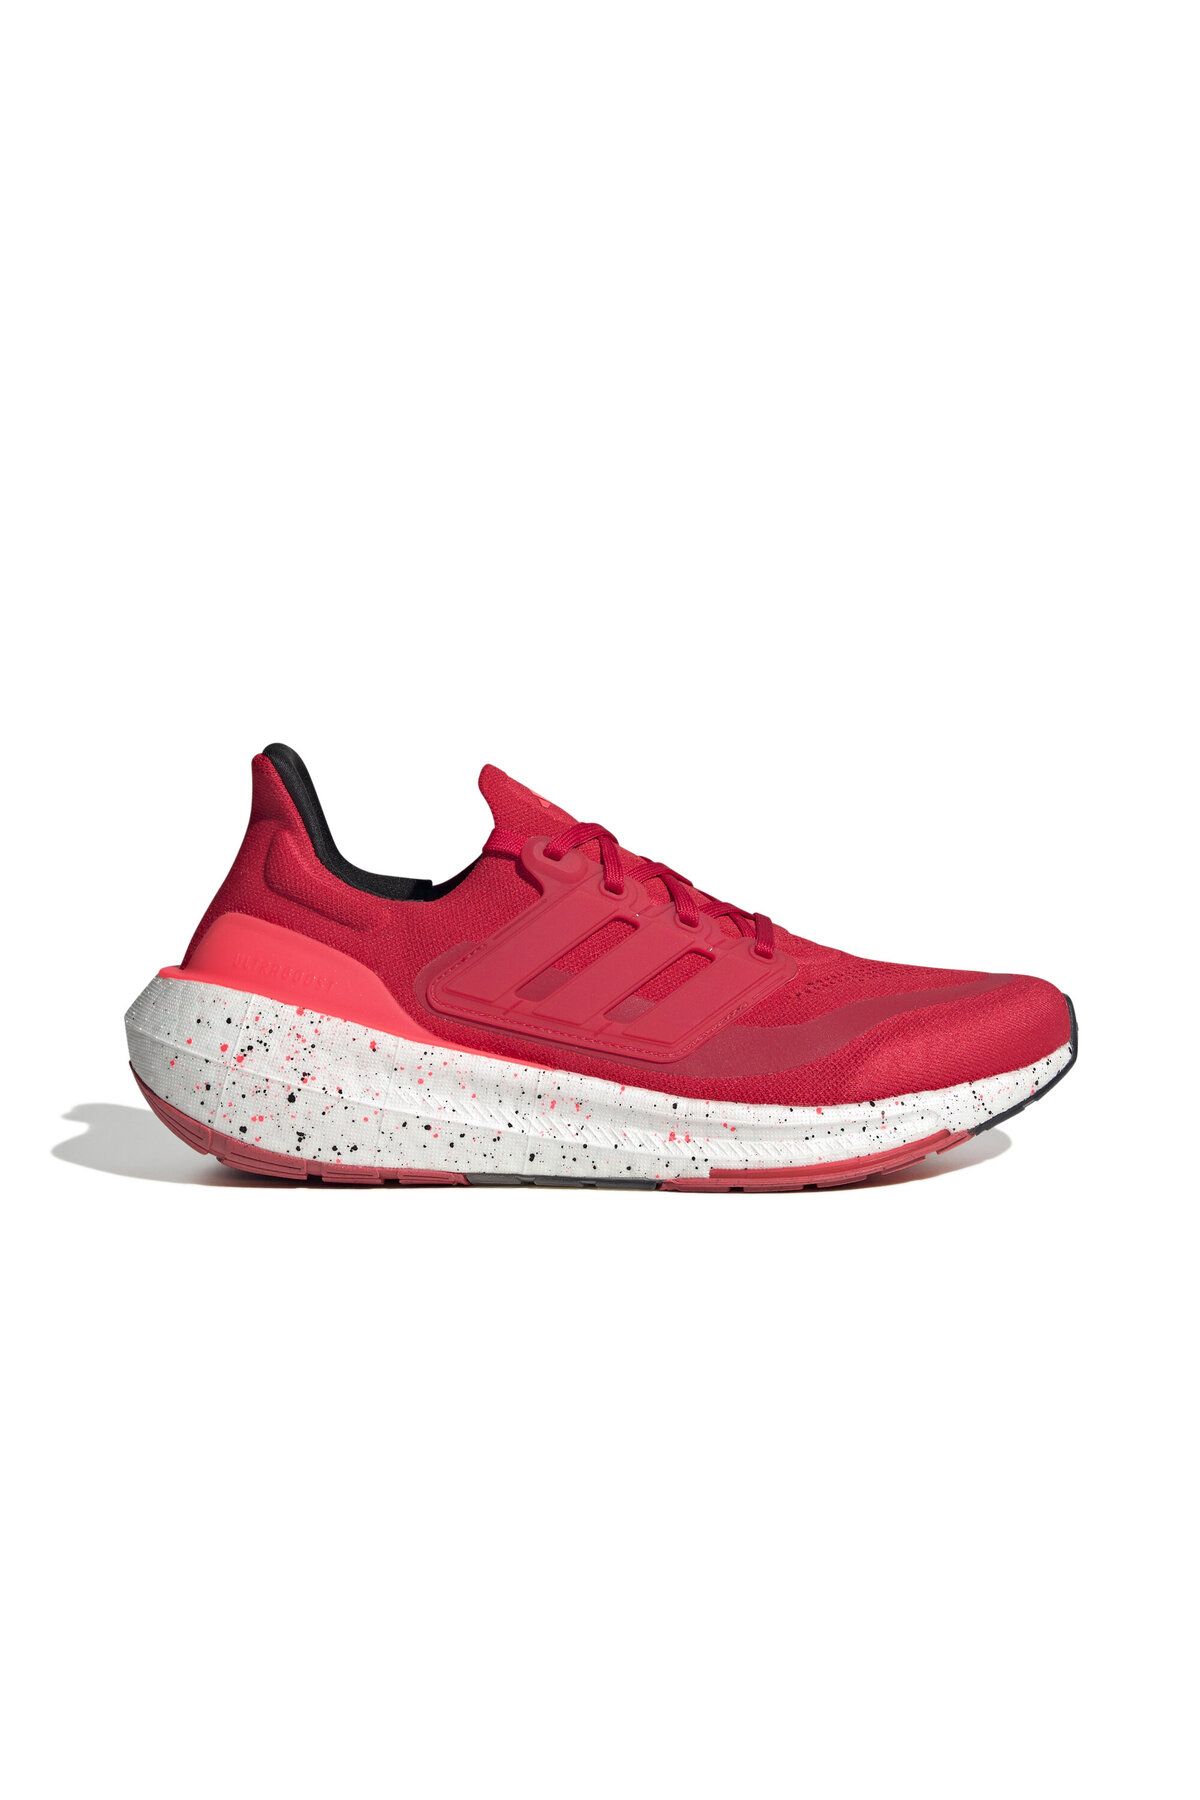 adidas Ultraboost Light Erkek Koşu Ayakkabısı IG0746 Kırmızı